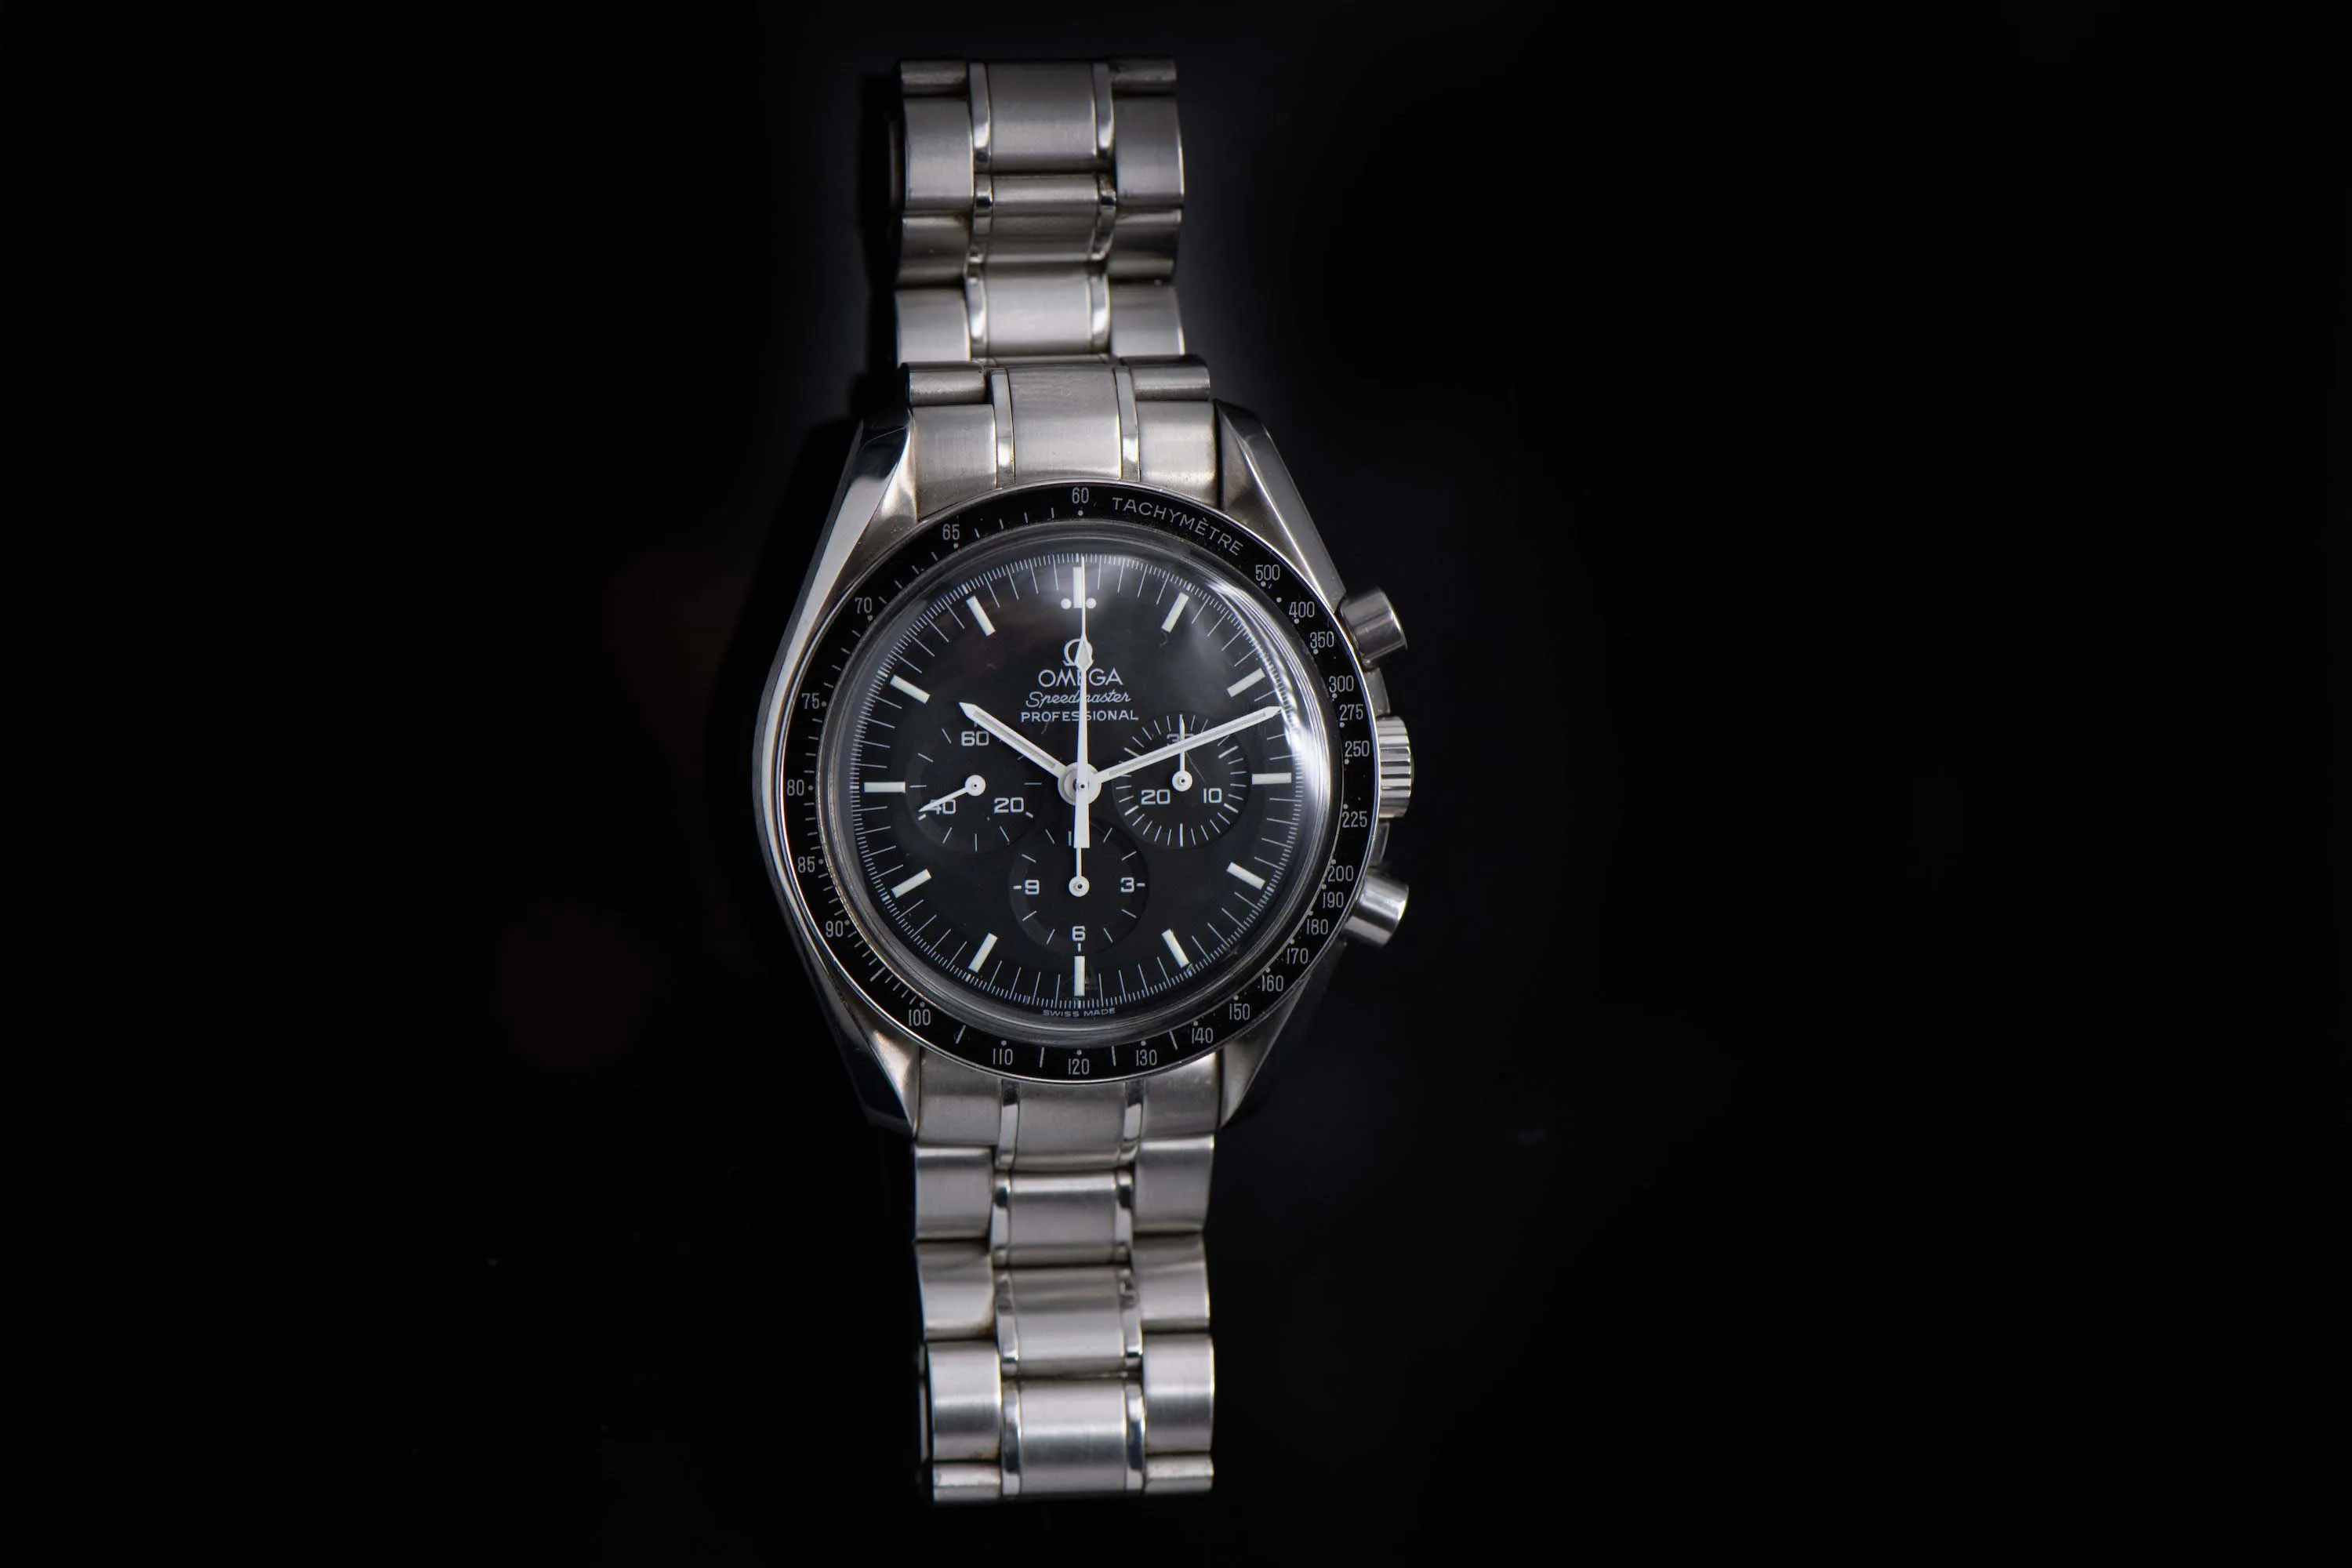 Omega Speedmaster Moon watch 3570.50.00 nullmm